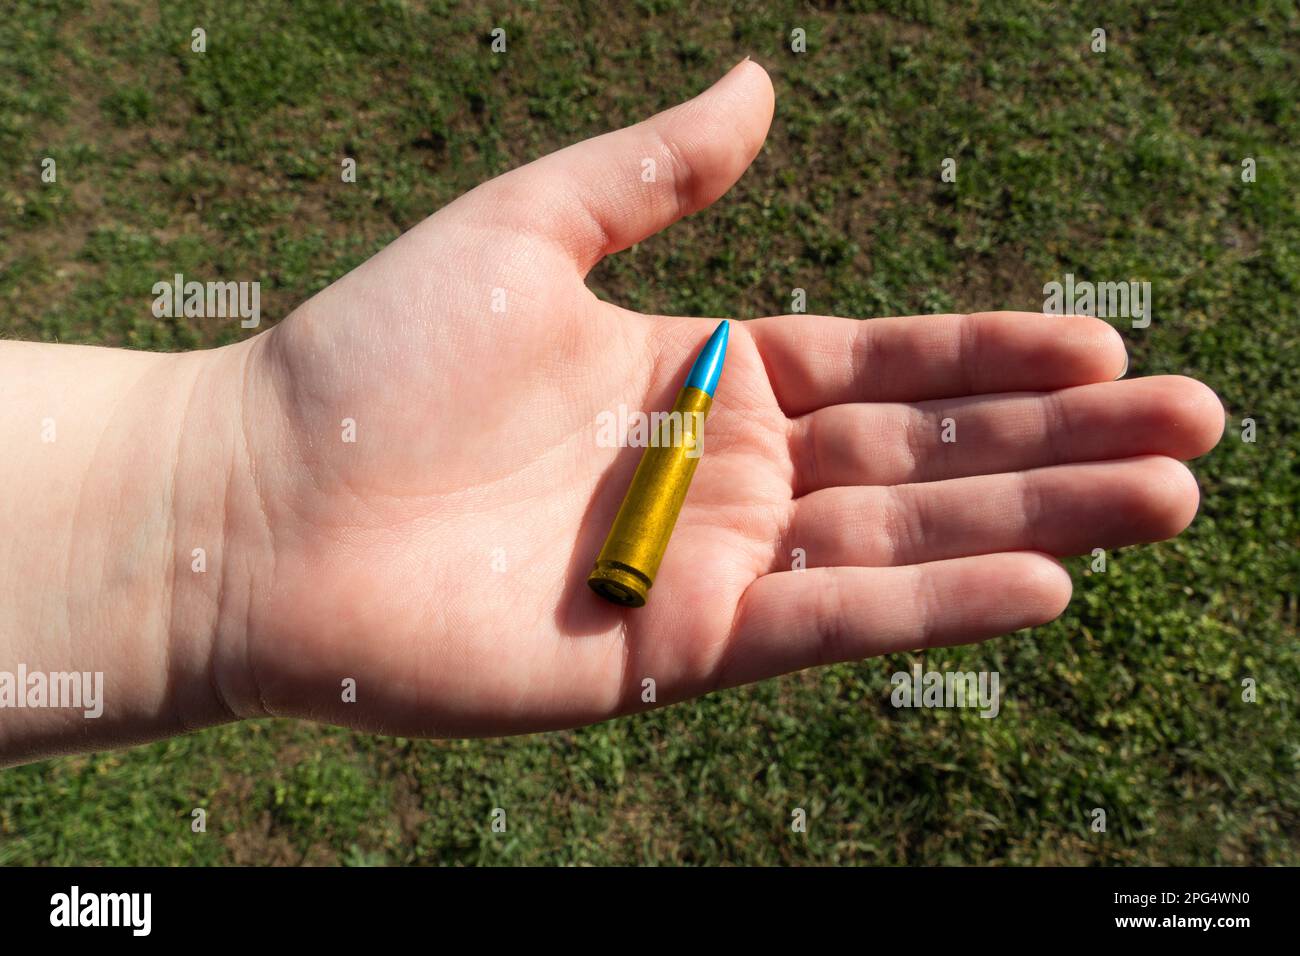 Gelbblaues Gewehrkartuschen in der Hand vor grünem Gras (nationale Symbole der Ukraine). Das Konzept der militärischen Unterstützung für die Ukraine Stockfoto